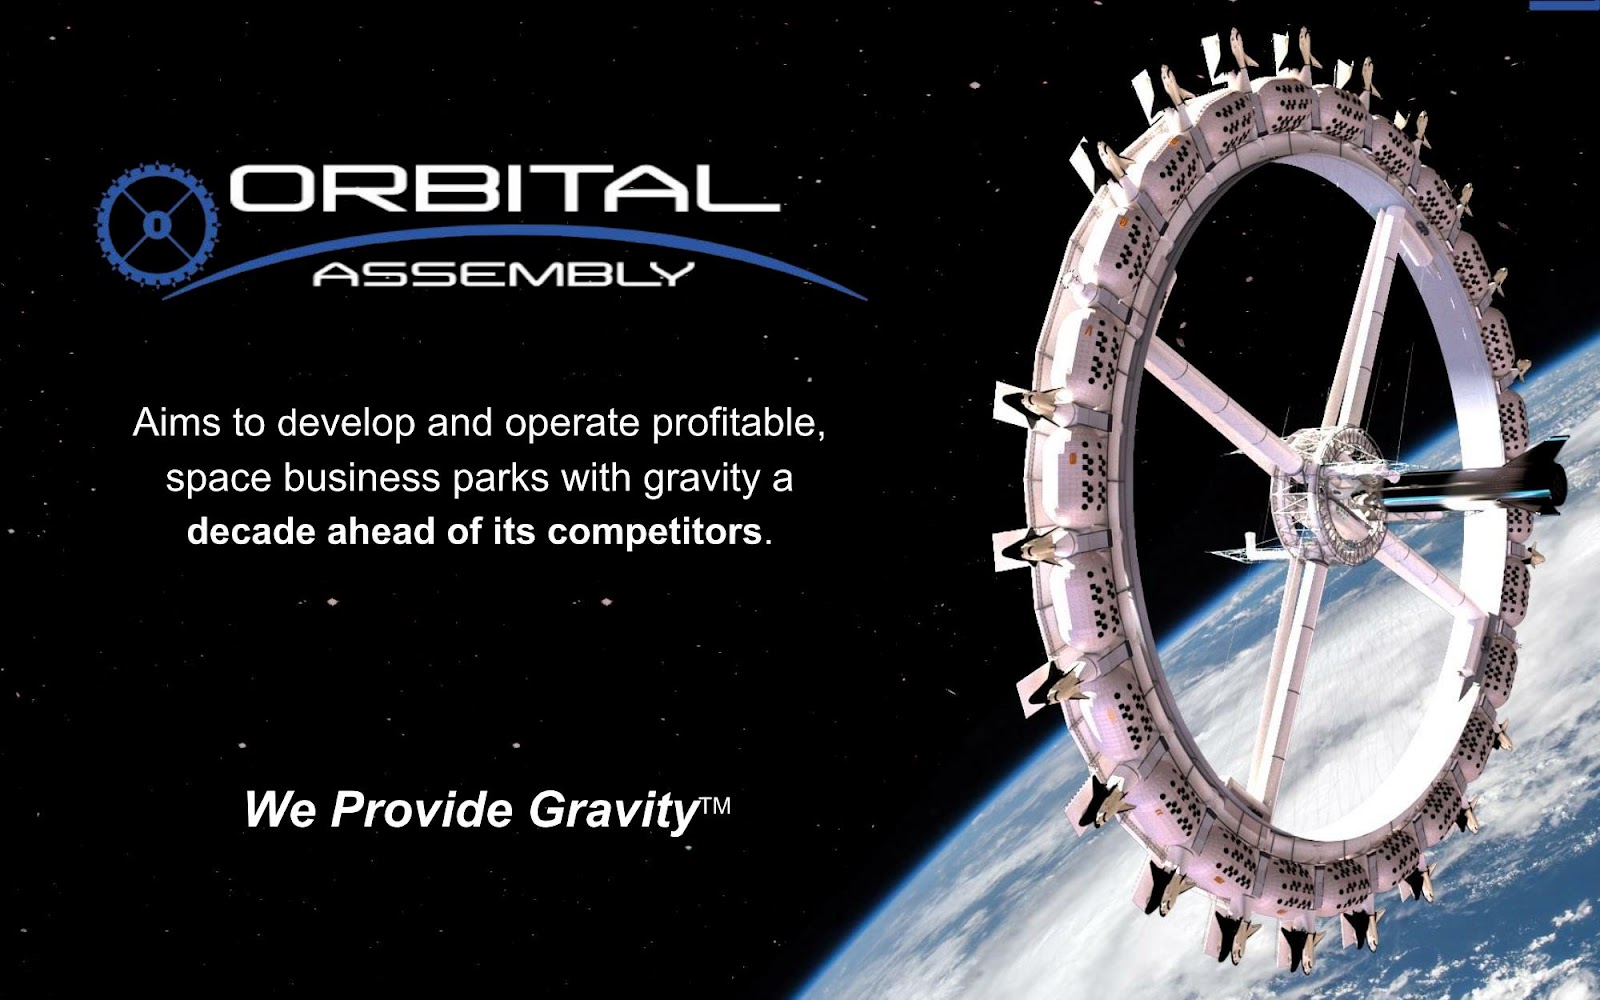 Orbital Assembly